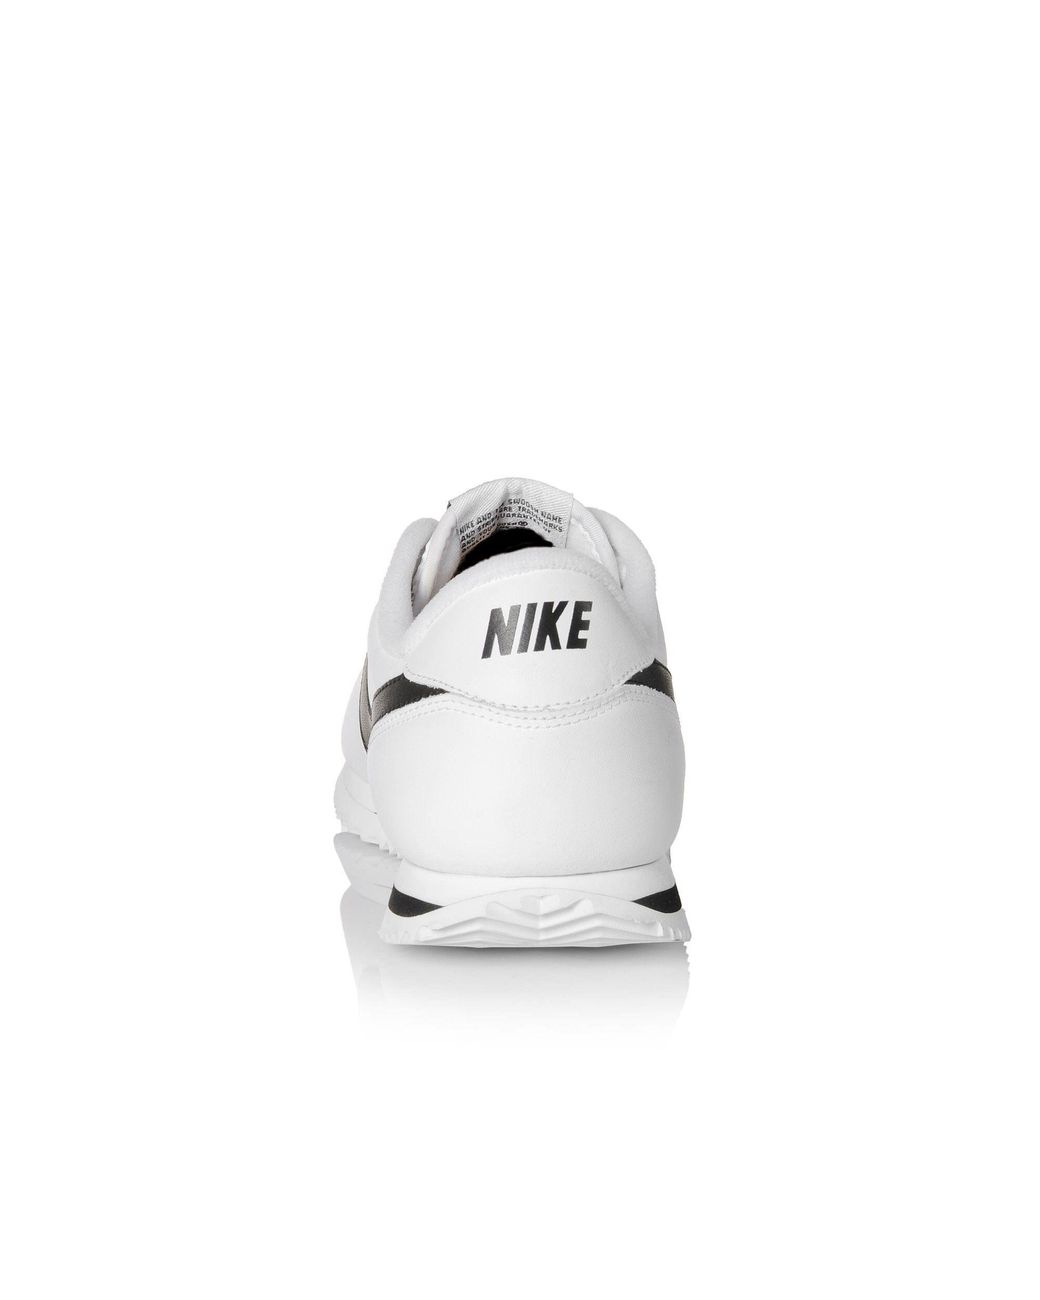 Nike Cortez Basic Leather Athletic Shoe 